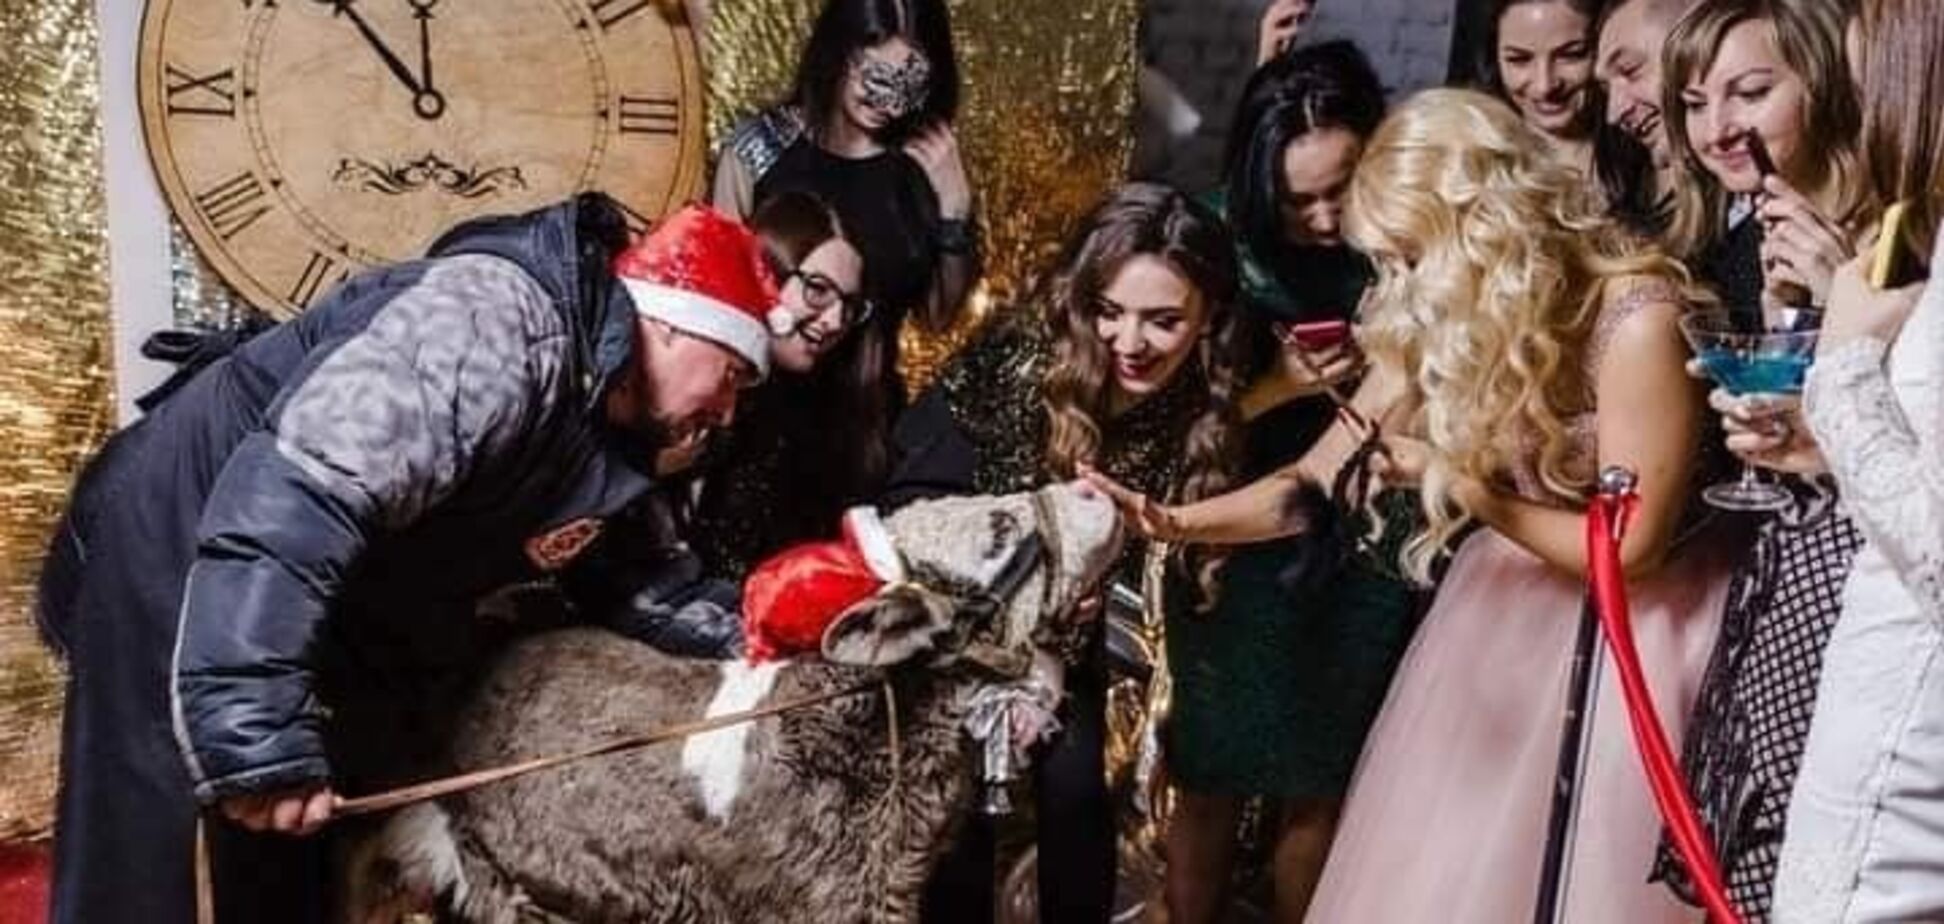 В Украине косметический бренд оскандалился из-за привязанного теленка на вечеринке. Подробности